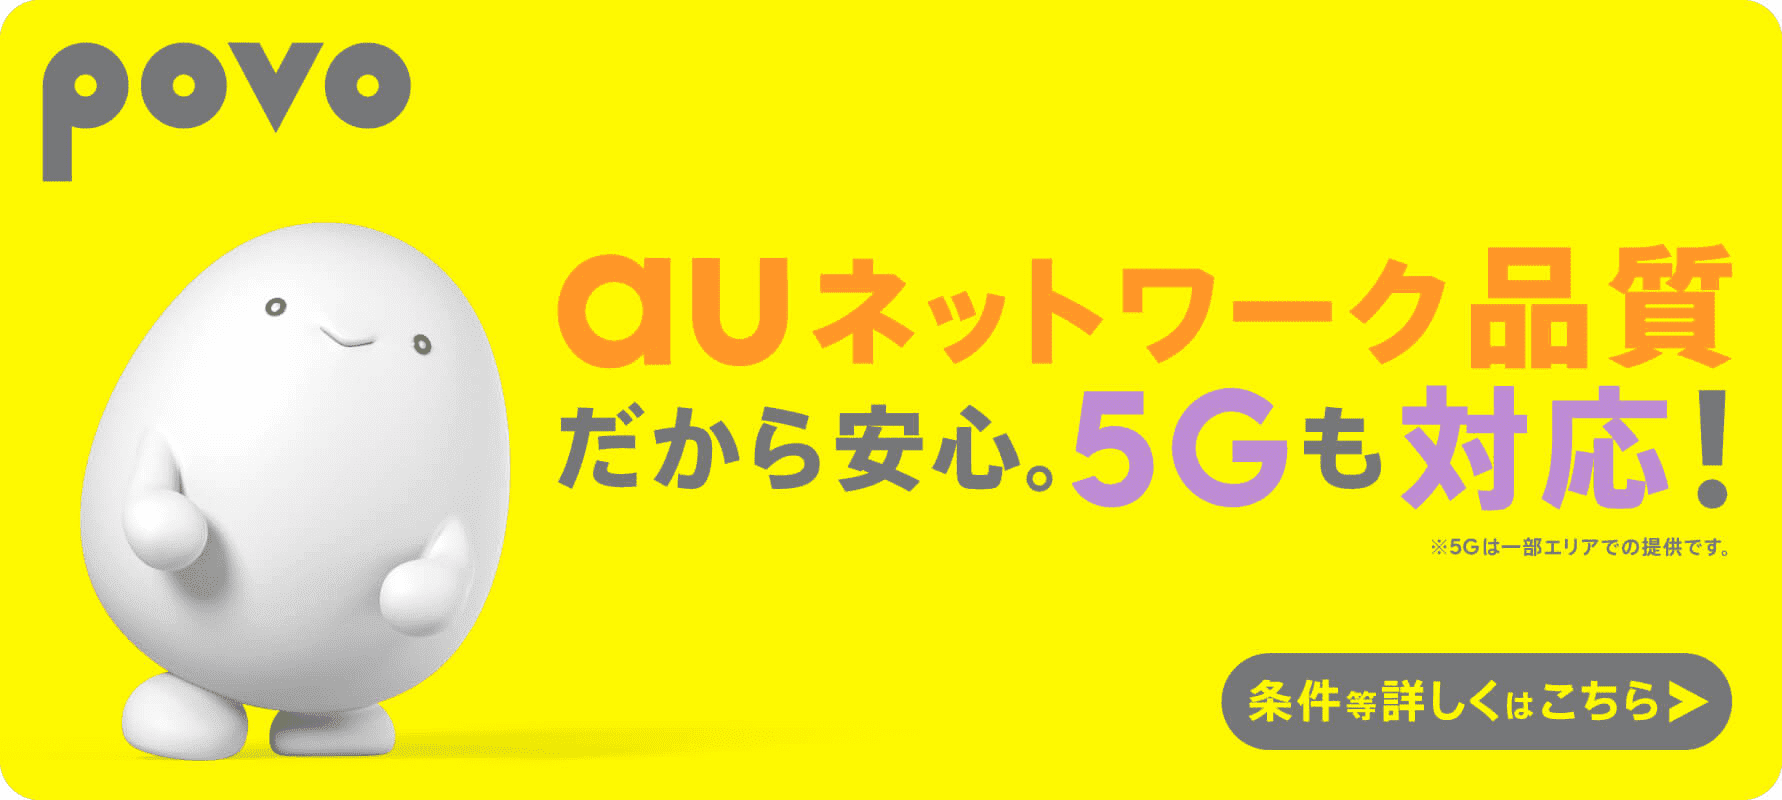 auネットワーク品質だから安心。5Gも対応 !